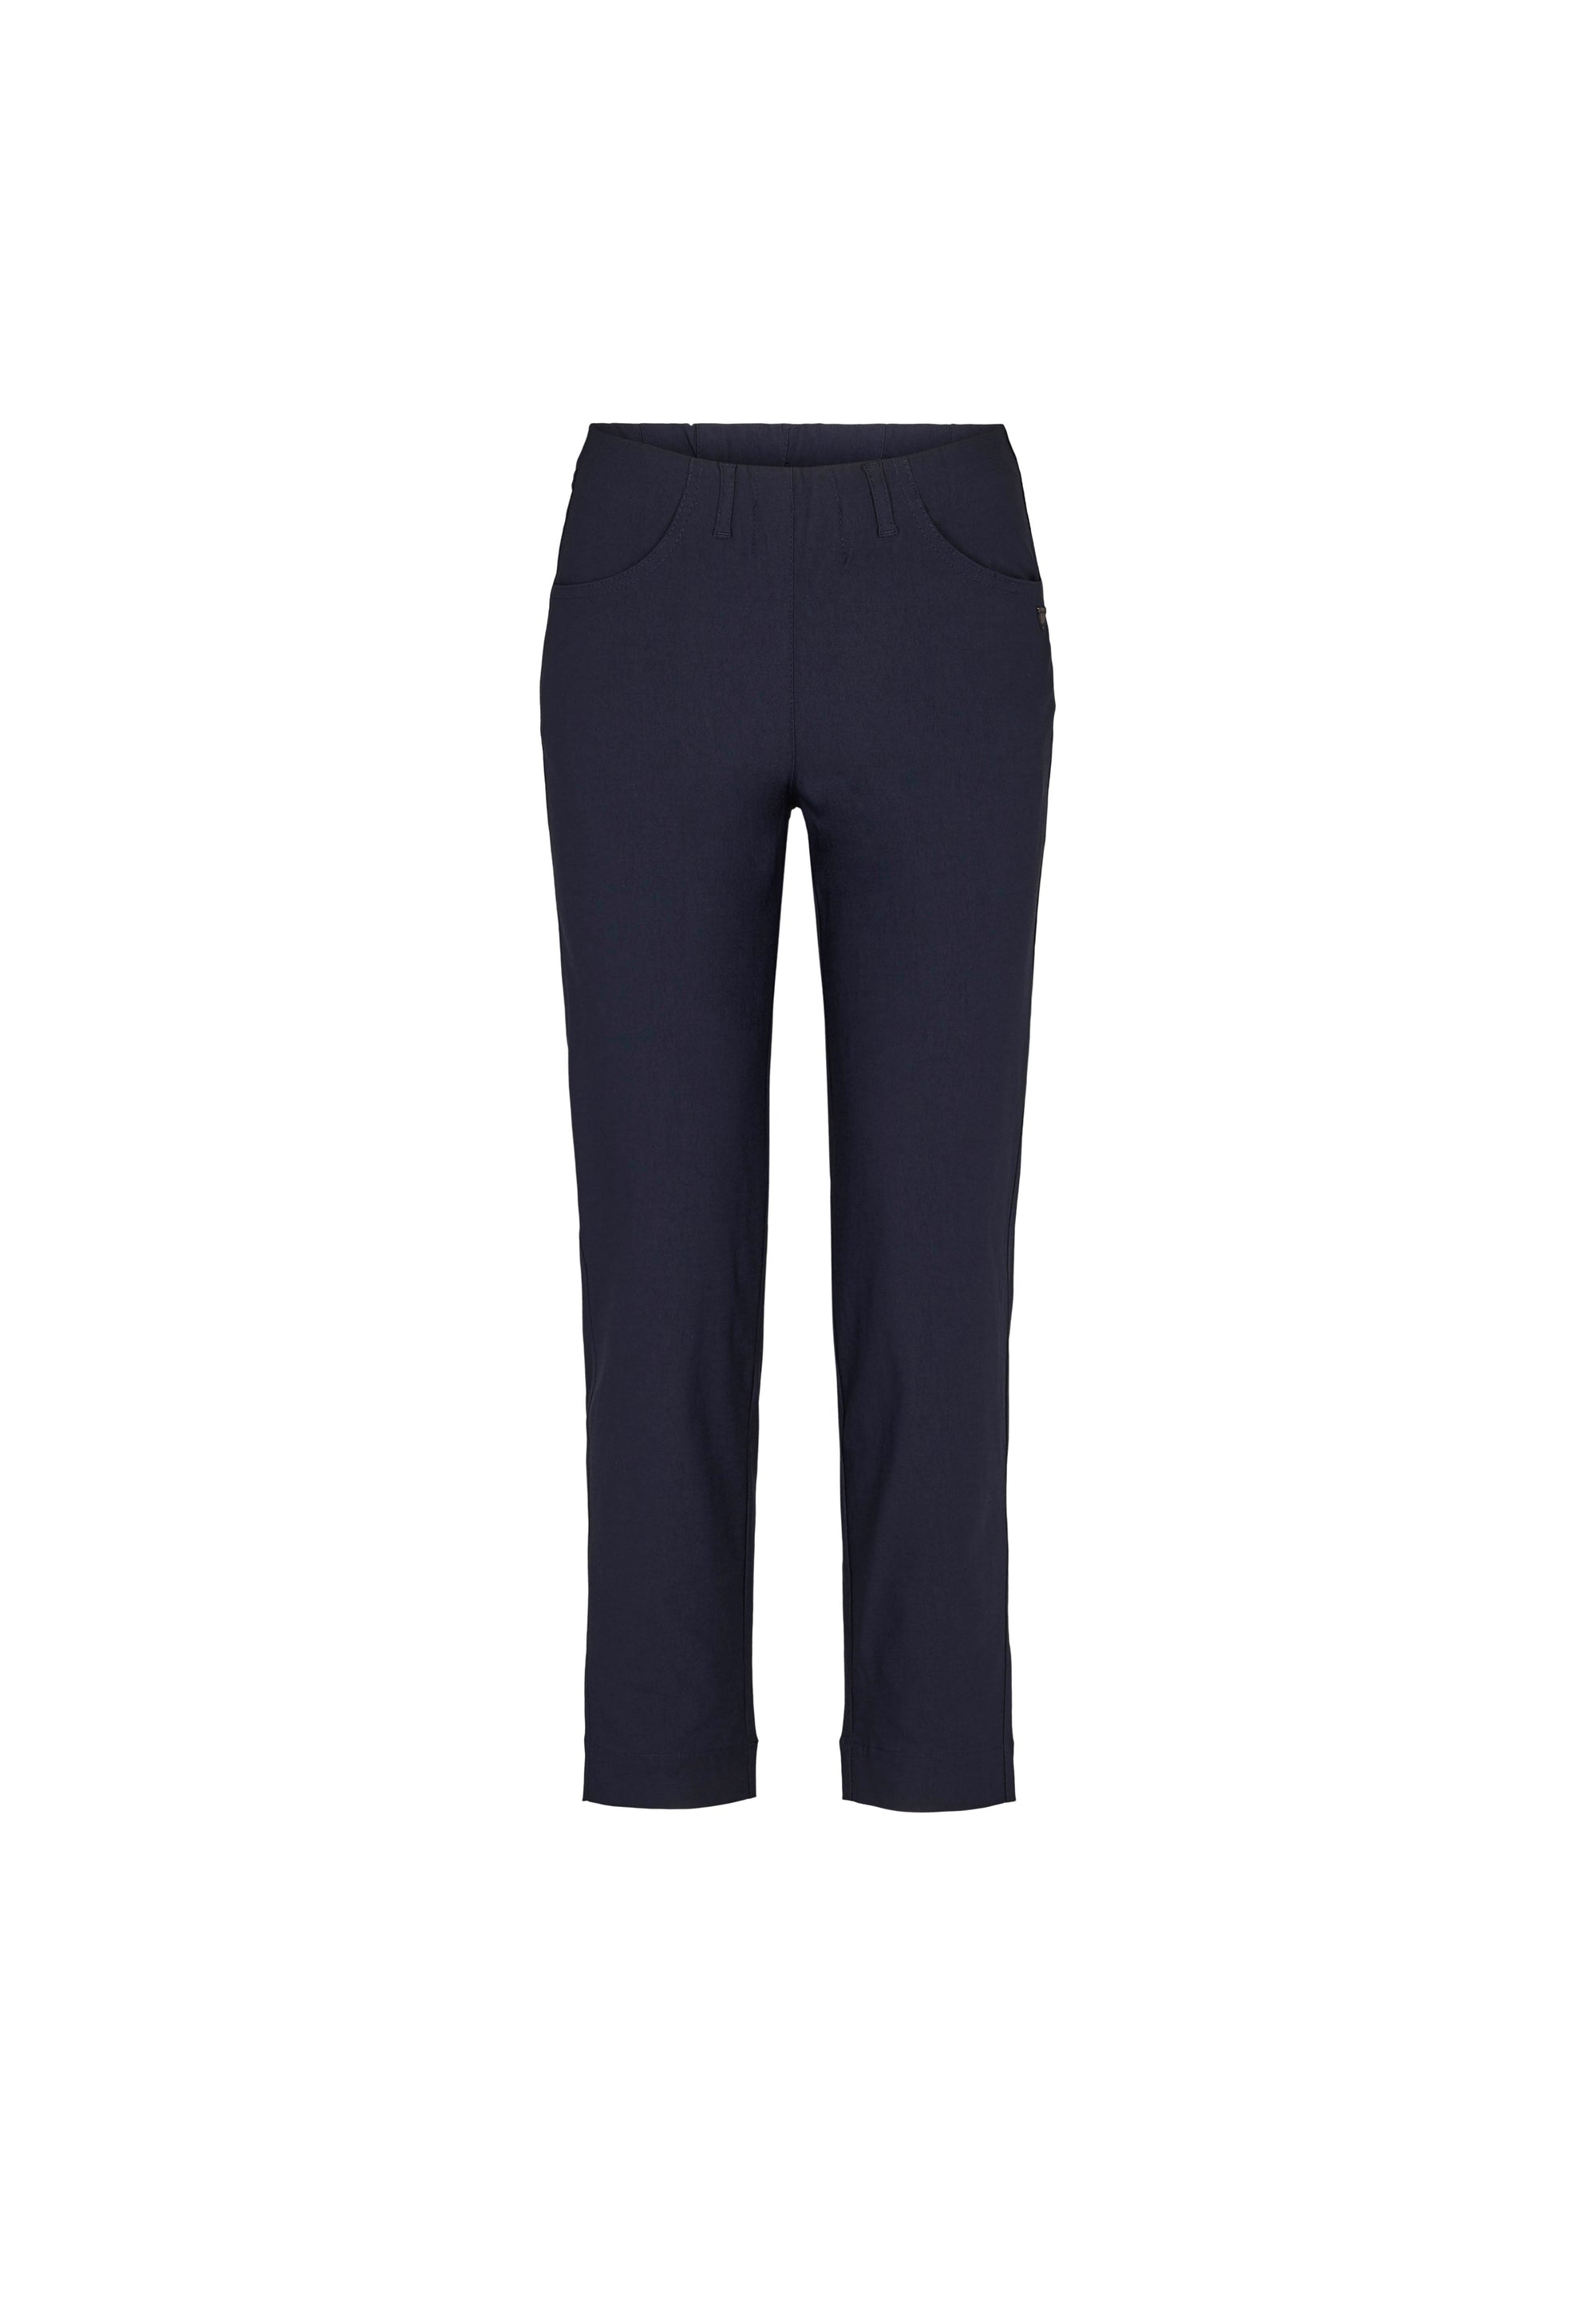 LAURIE Kelly Regular - Short Length Trousers REGULAR 49970 Navy